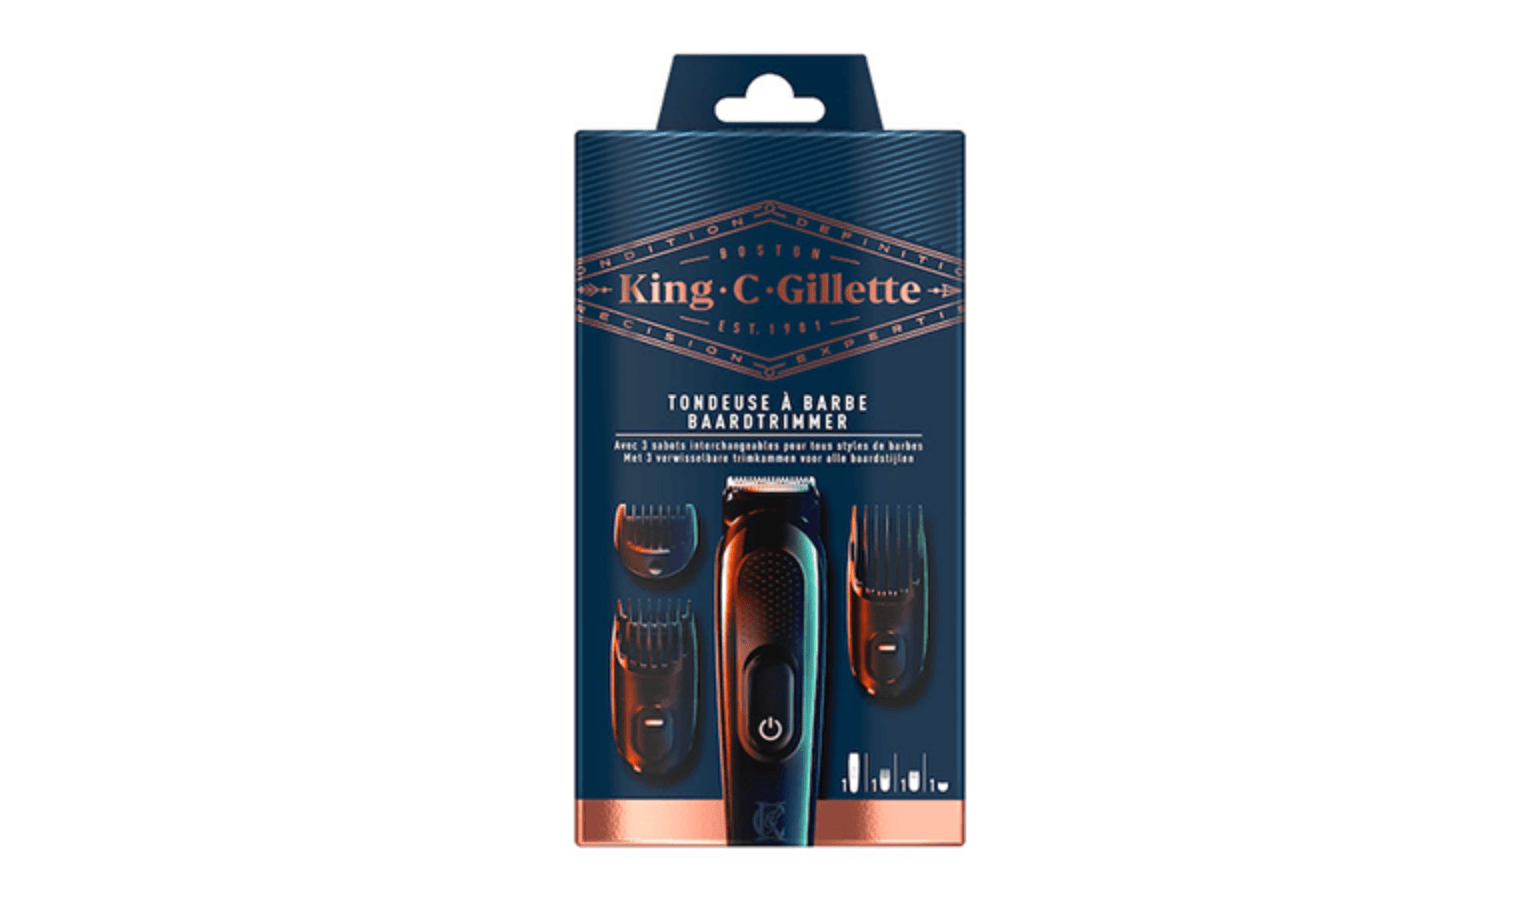 Tondeuse à barbe sans fil King C. Gillette